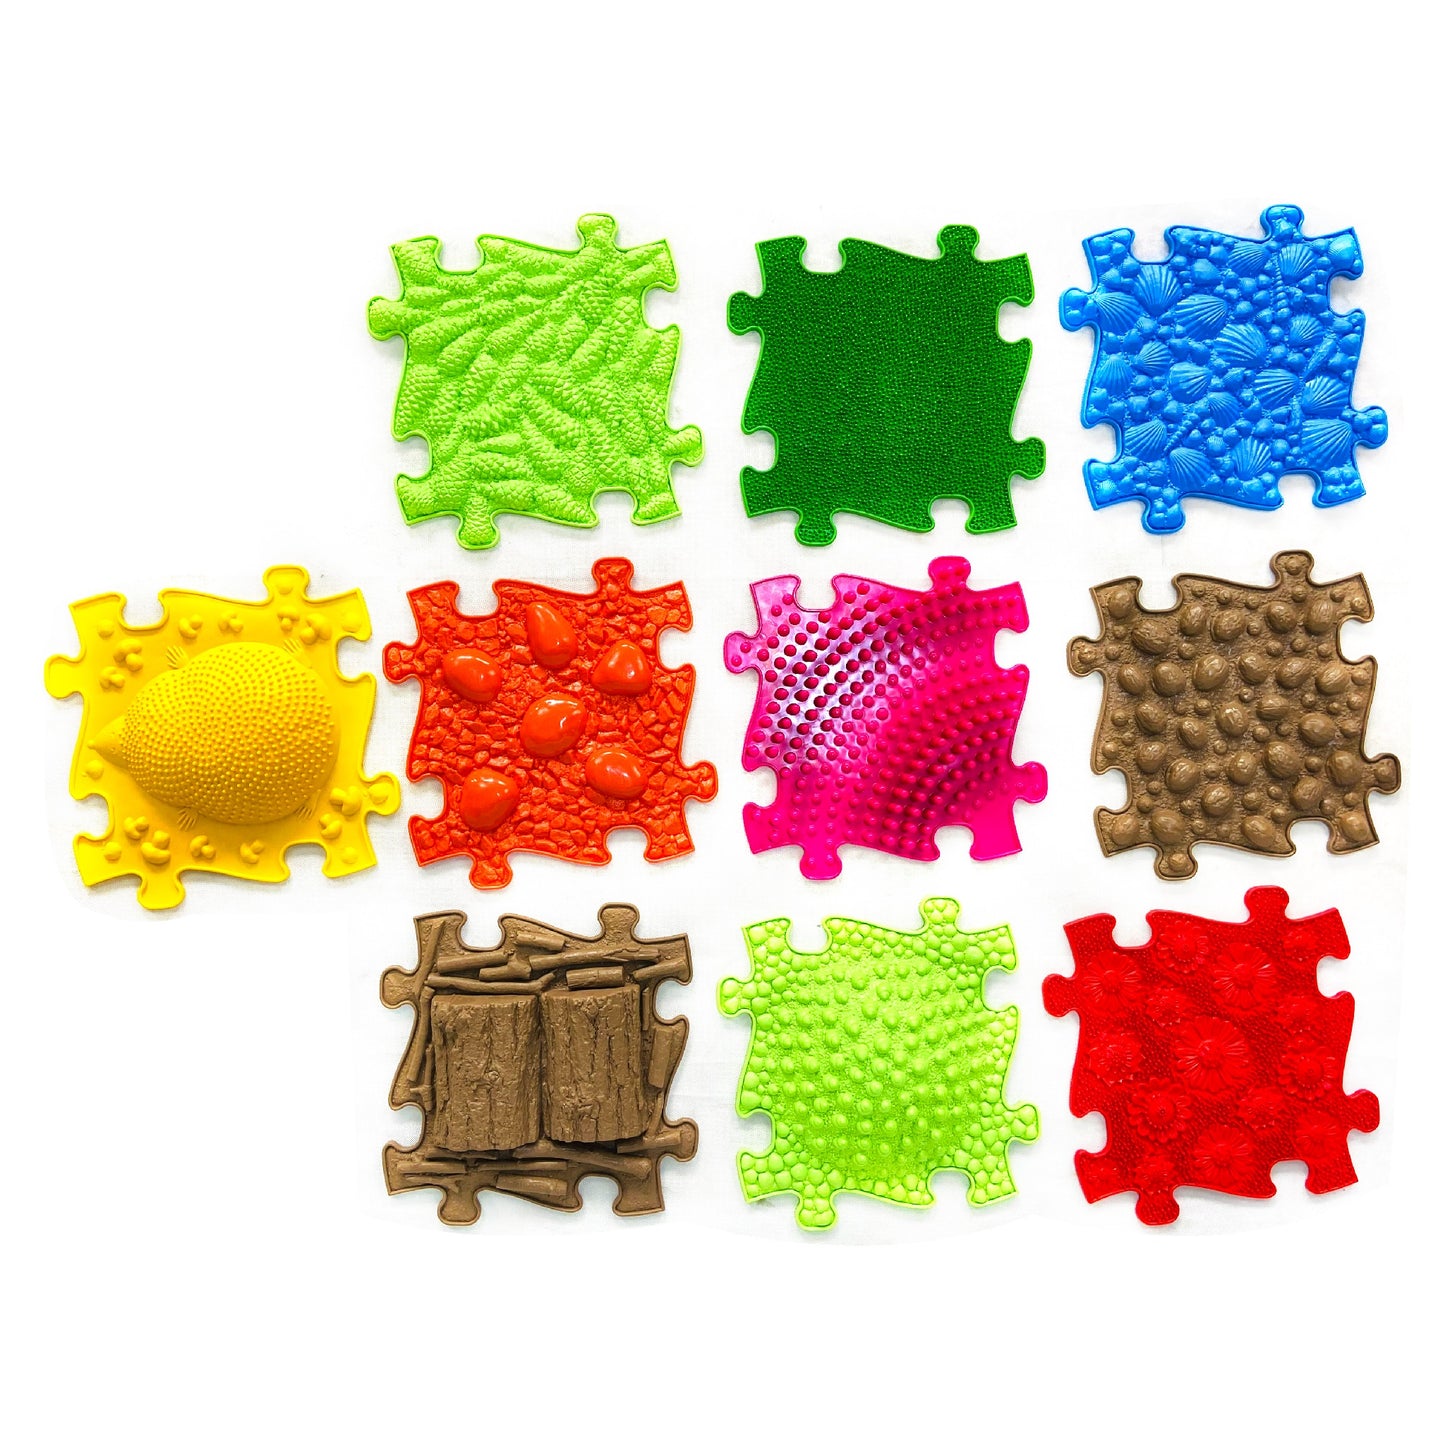 Tactle Puzzle Mat 觸覺拼圖墊